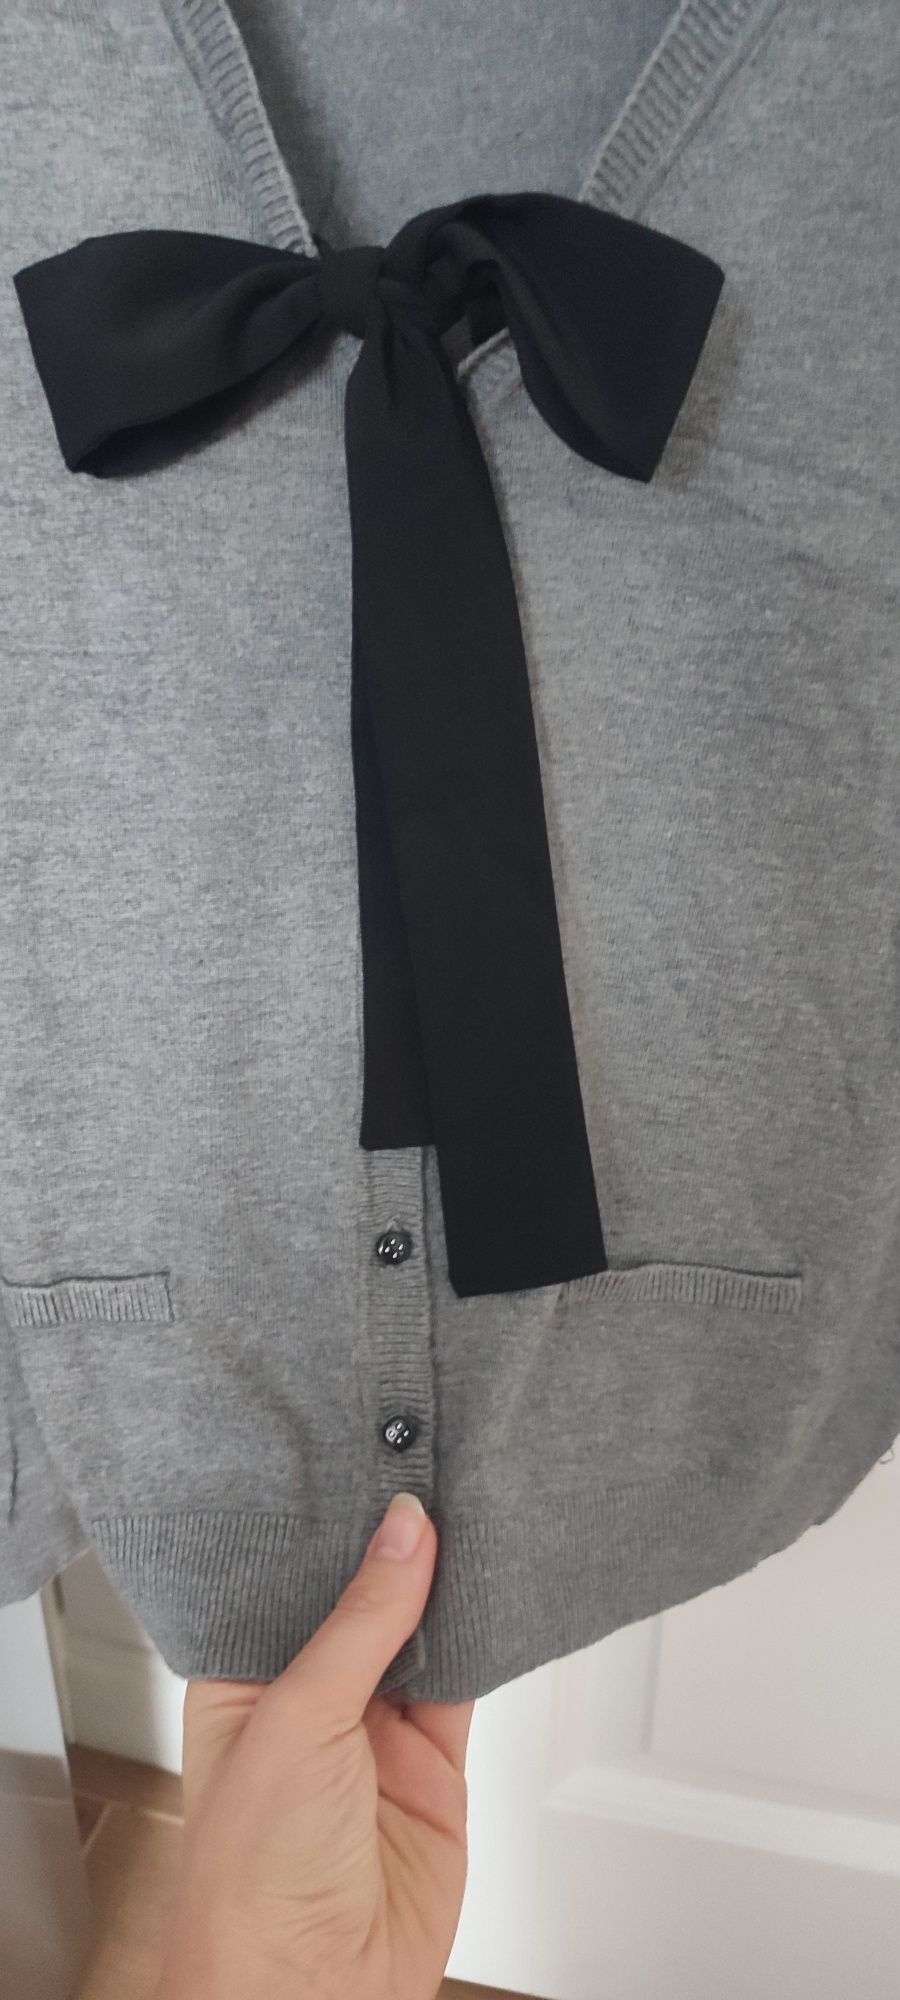 Orsay sweterek szary XS z wiązana szarfa na dekolcie